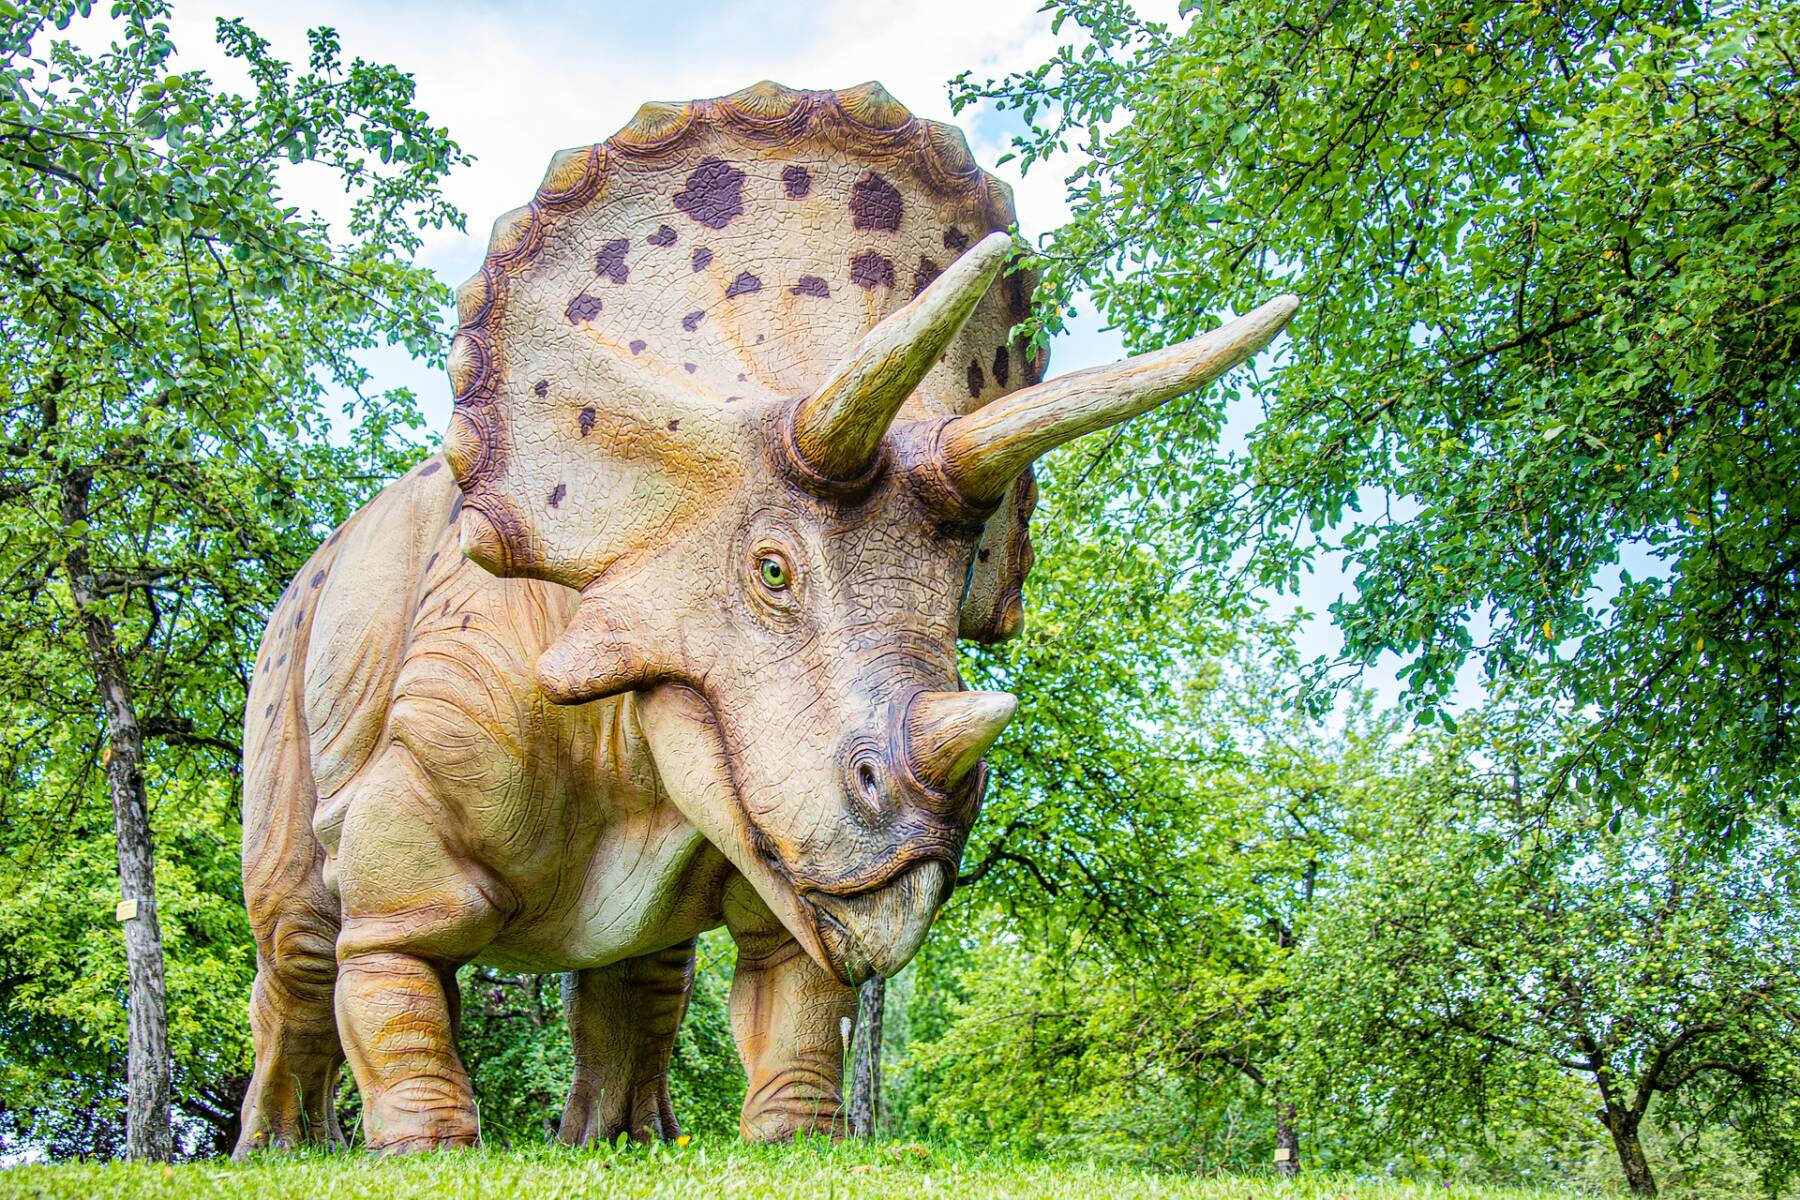 Triceratopo Foto di Hermann Kollinger da Pixabay